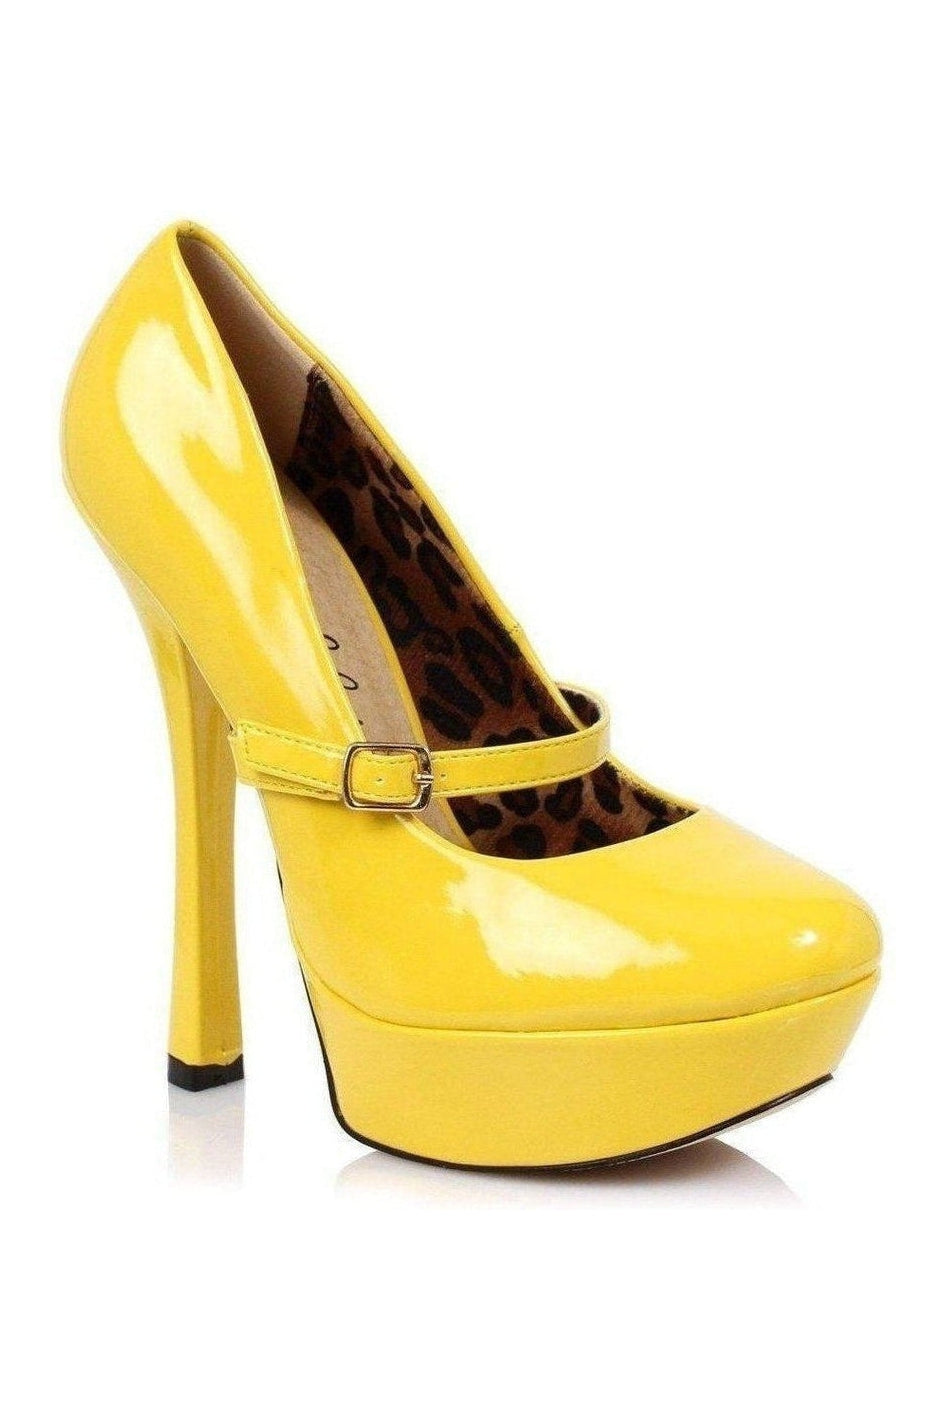 633-PAYTON Platform Pump | Yellow Patent-Ellie Shoes-SEXYSHOES.COM